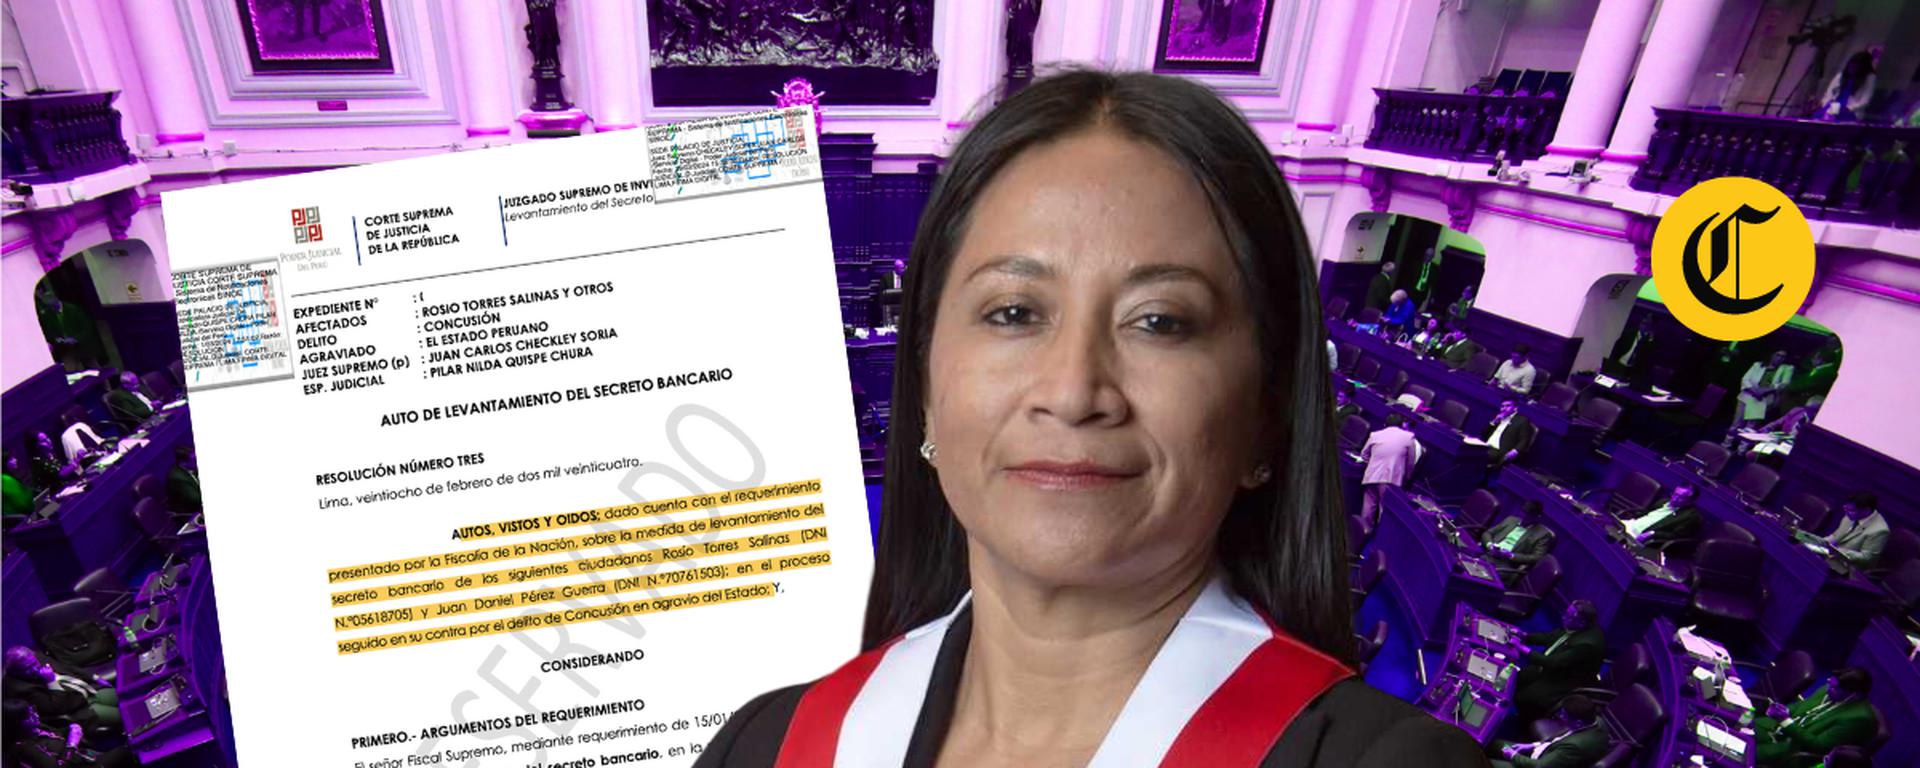 Caso “Mochasueldos”: PJ ordena levantar secreto bancario de congresista de APP, Rosio Torres